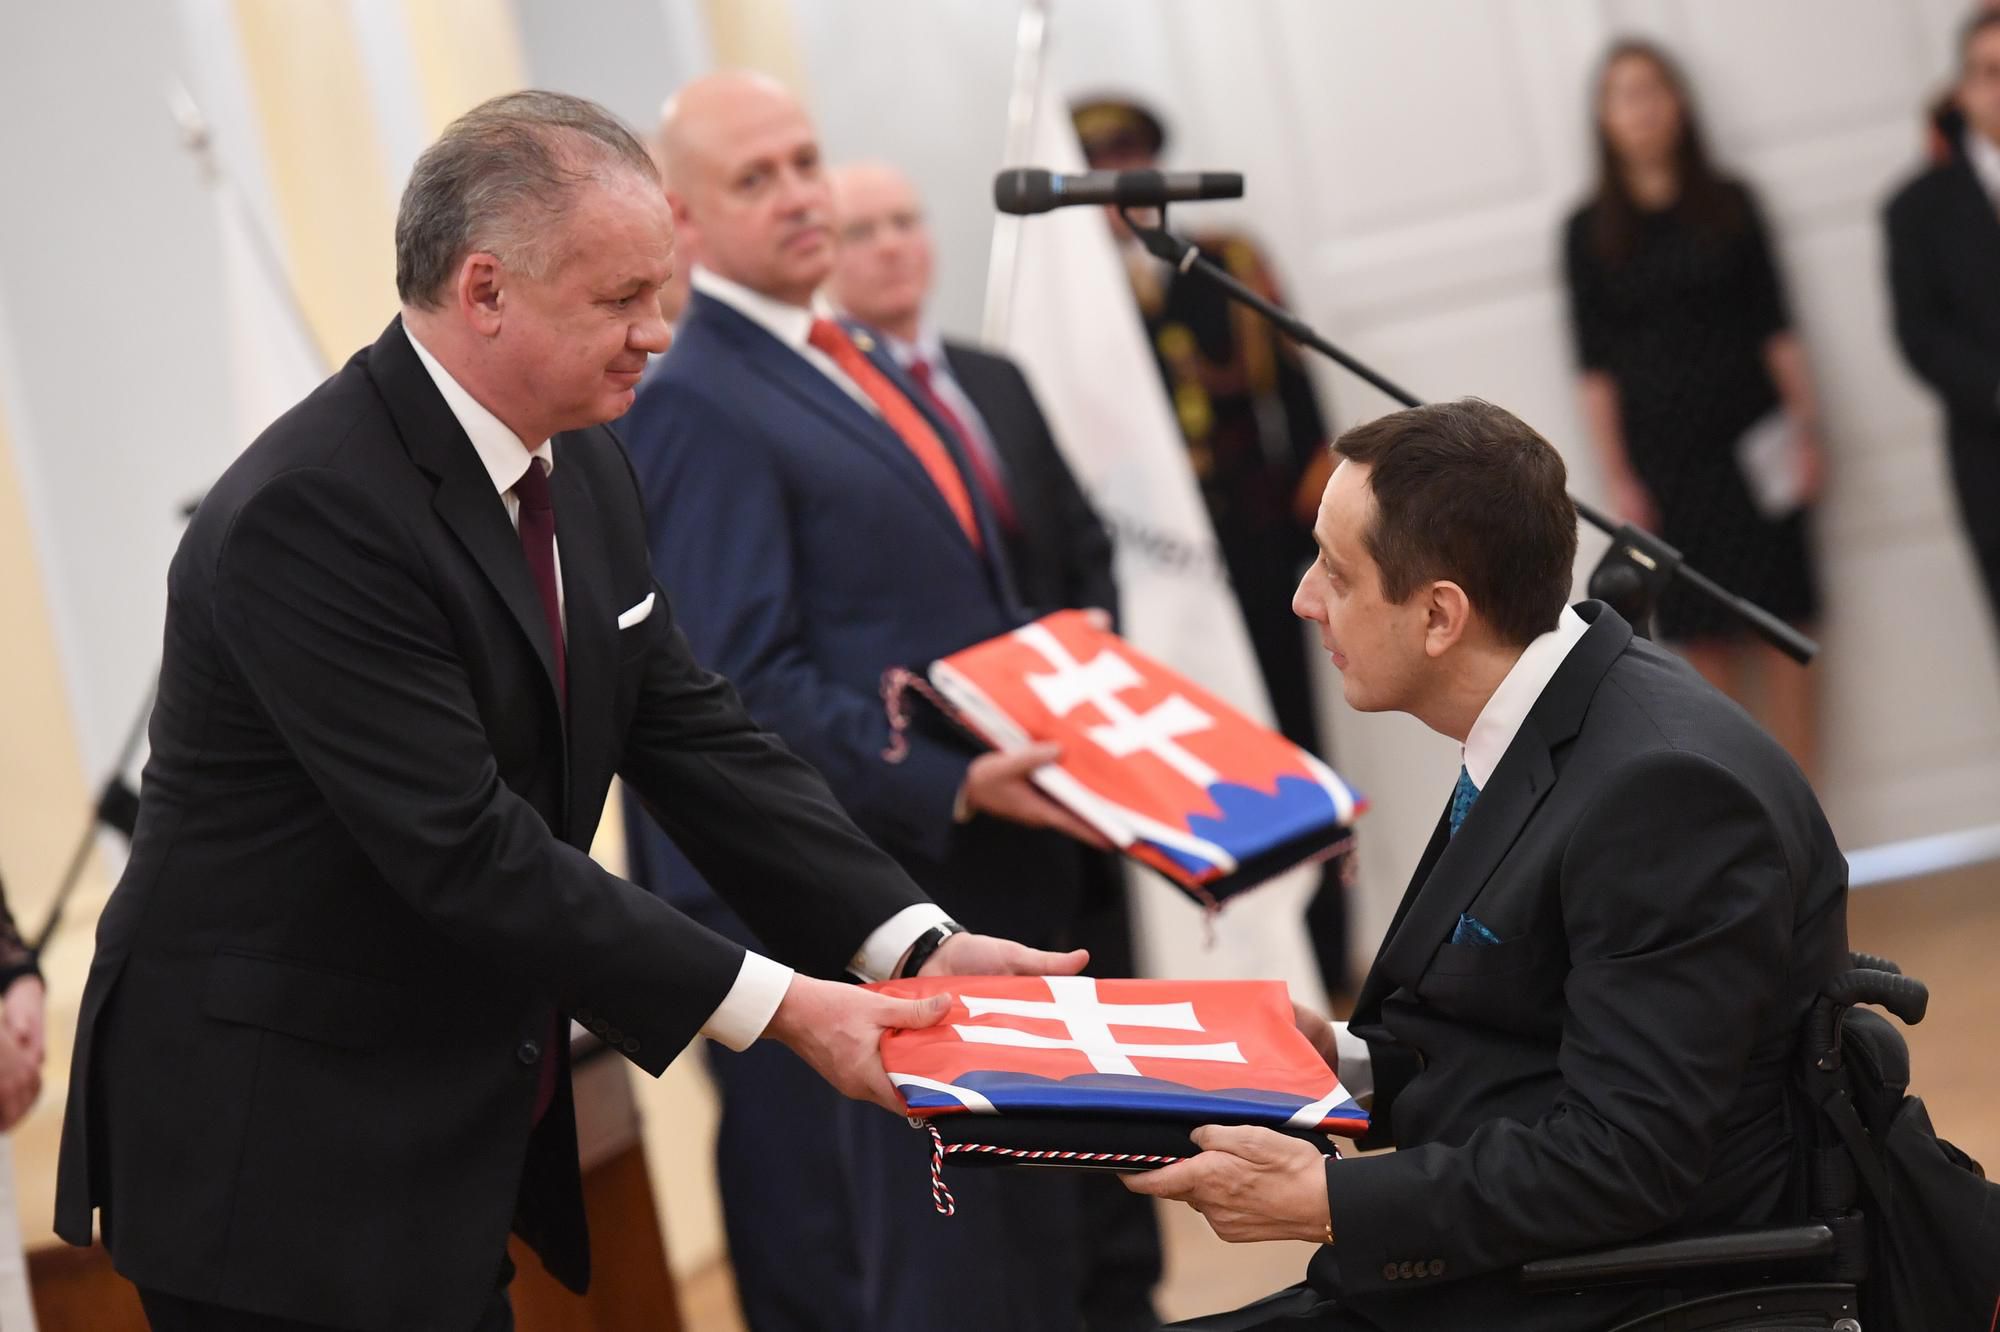 Predseda Slovenského paralympijského výboru (SPV) Ján Riapoš si preberá dekrét a slovenskú vlajku z rúk prezidenta SR Andreja Kisku.